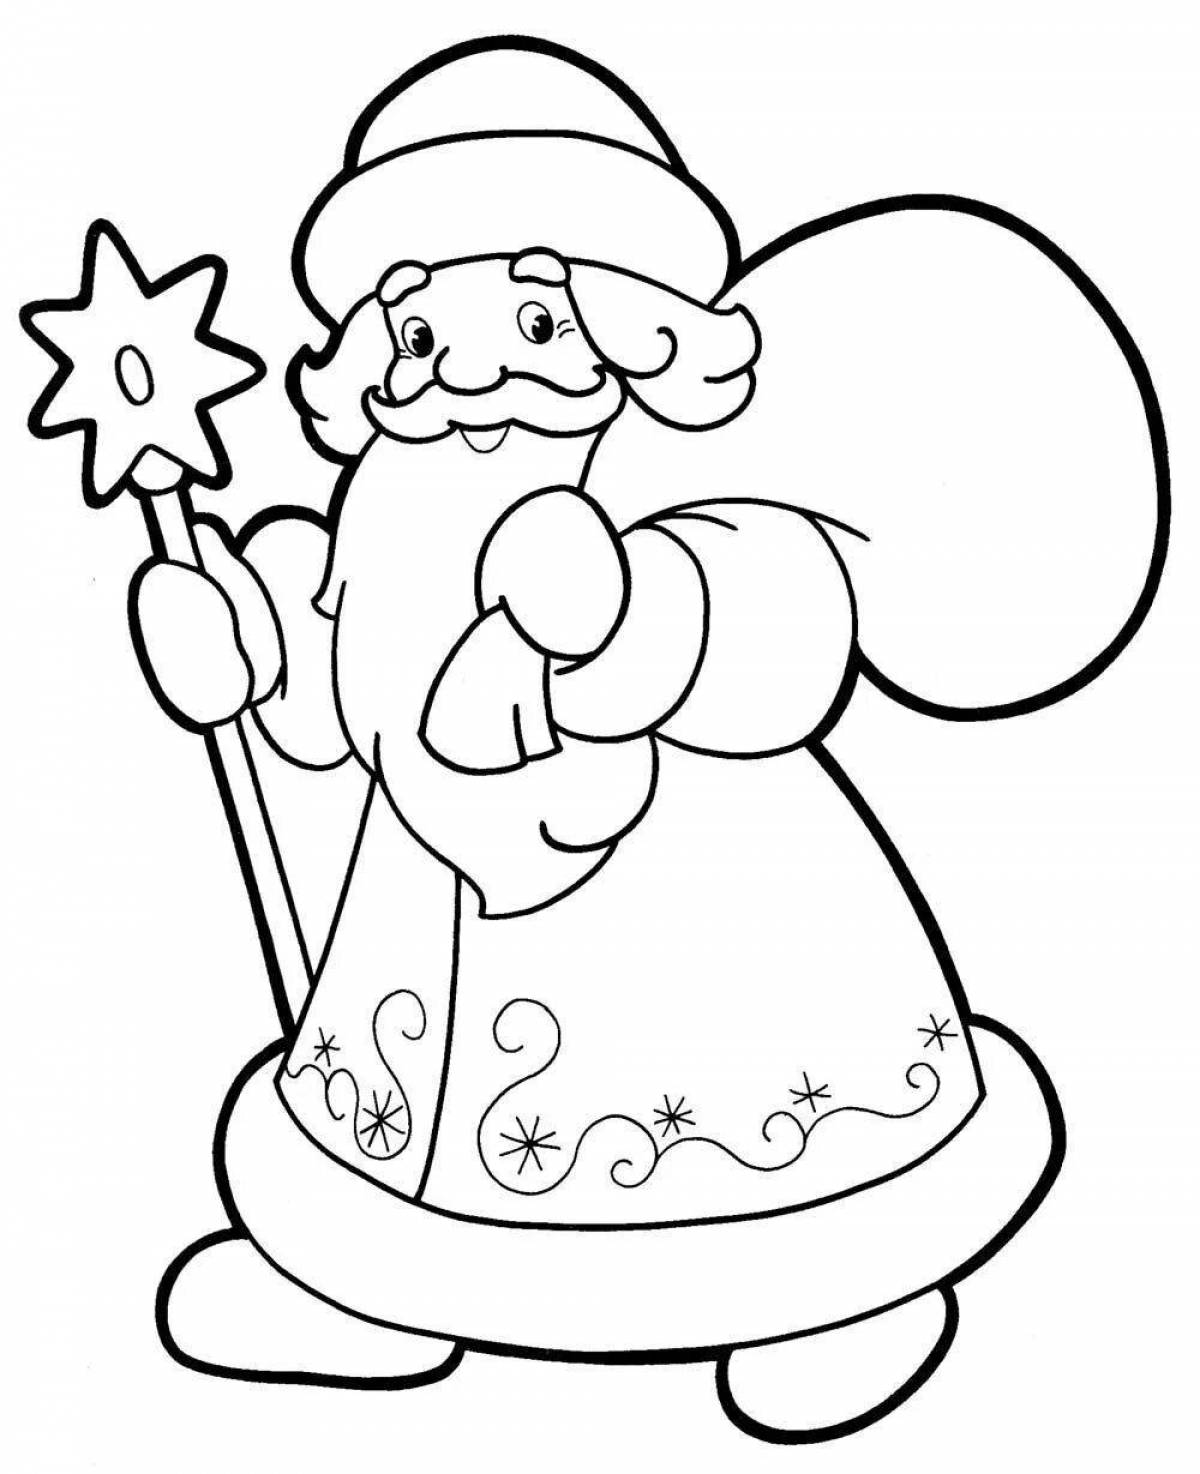 Charming Santa Claus coloring book